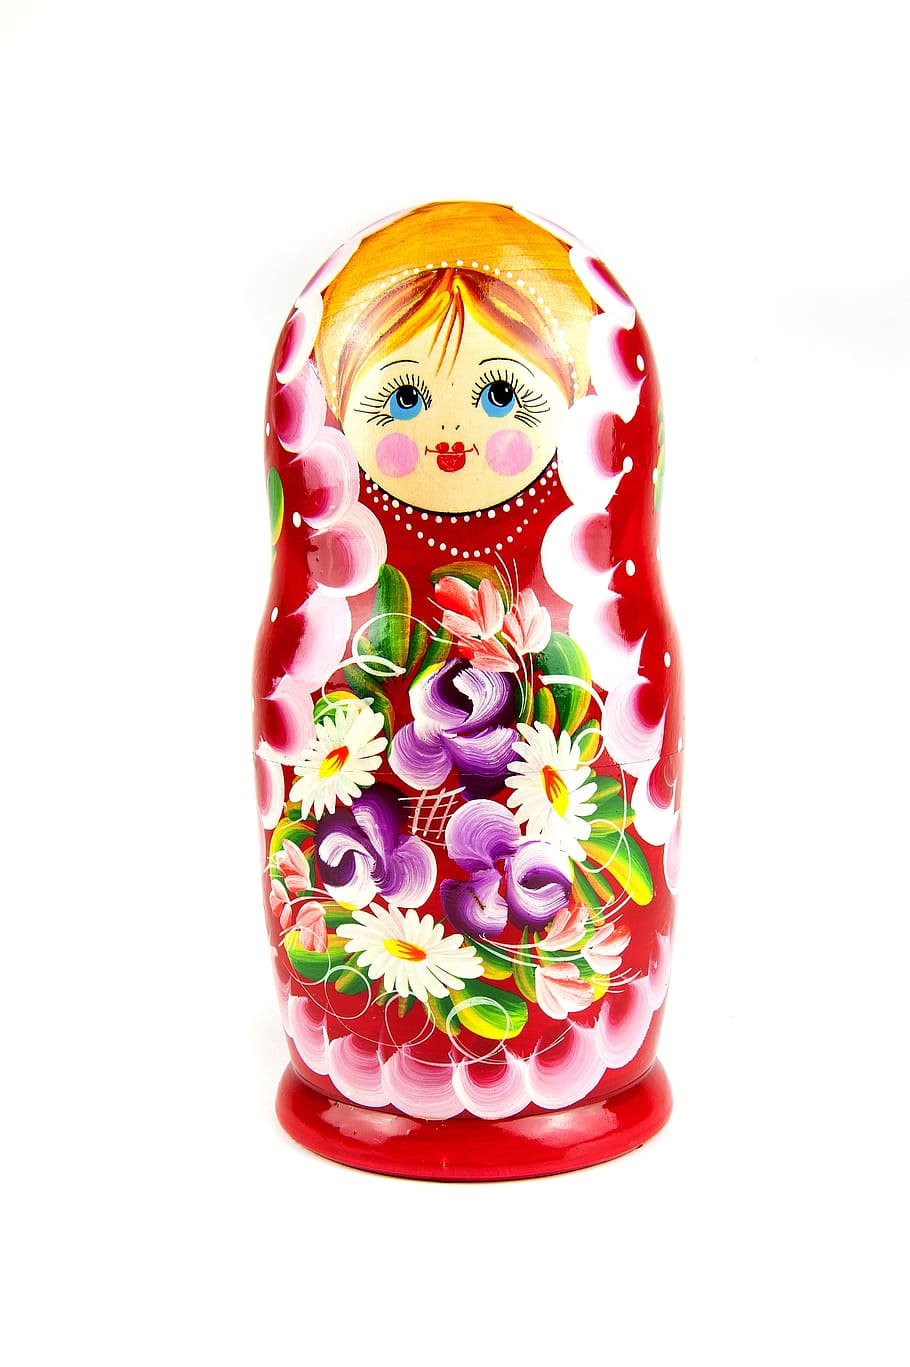 boneka bersarang merah, Matrioshka, Kayu, Budaya, Simbol, retro, mainan, Rusia, khas, nenek